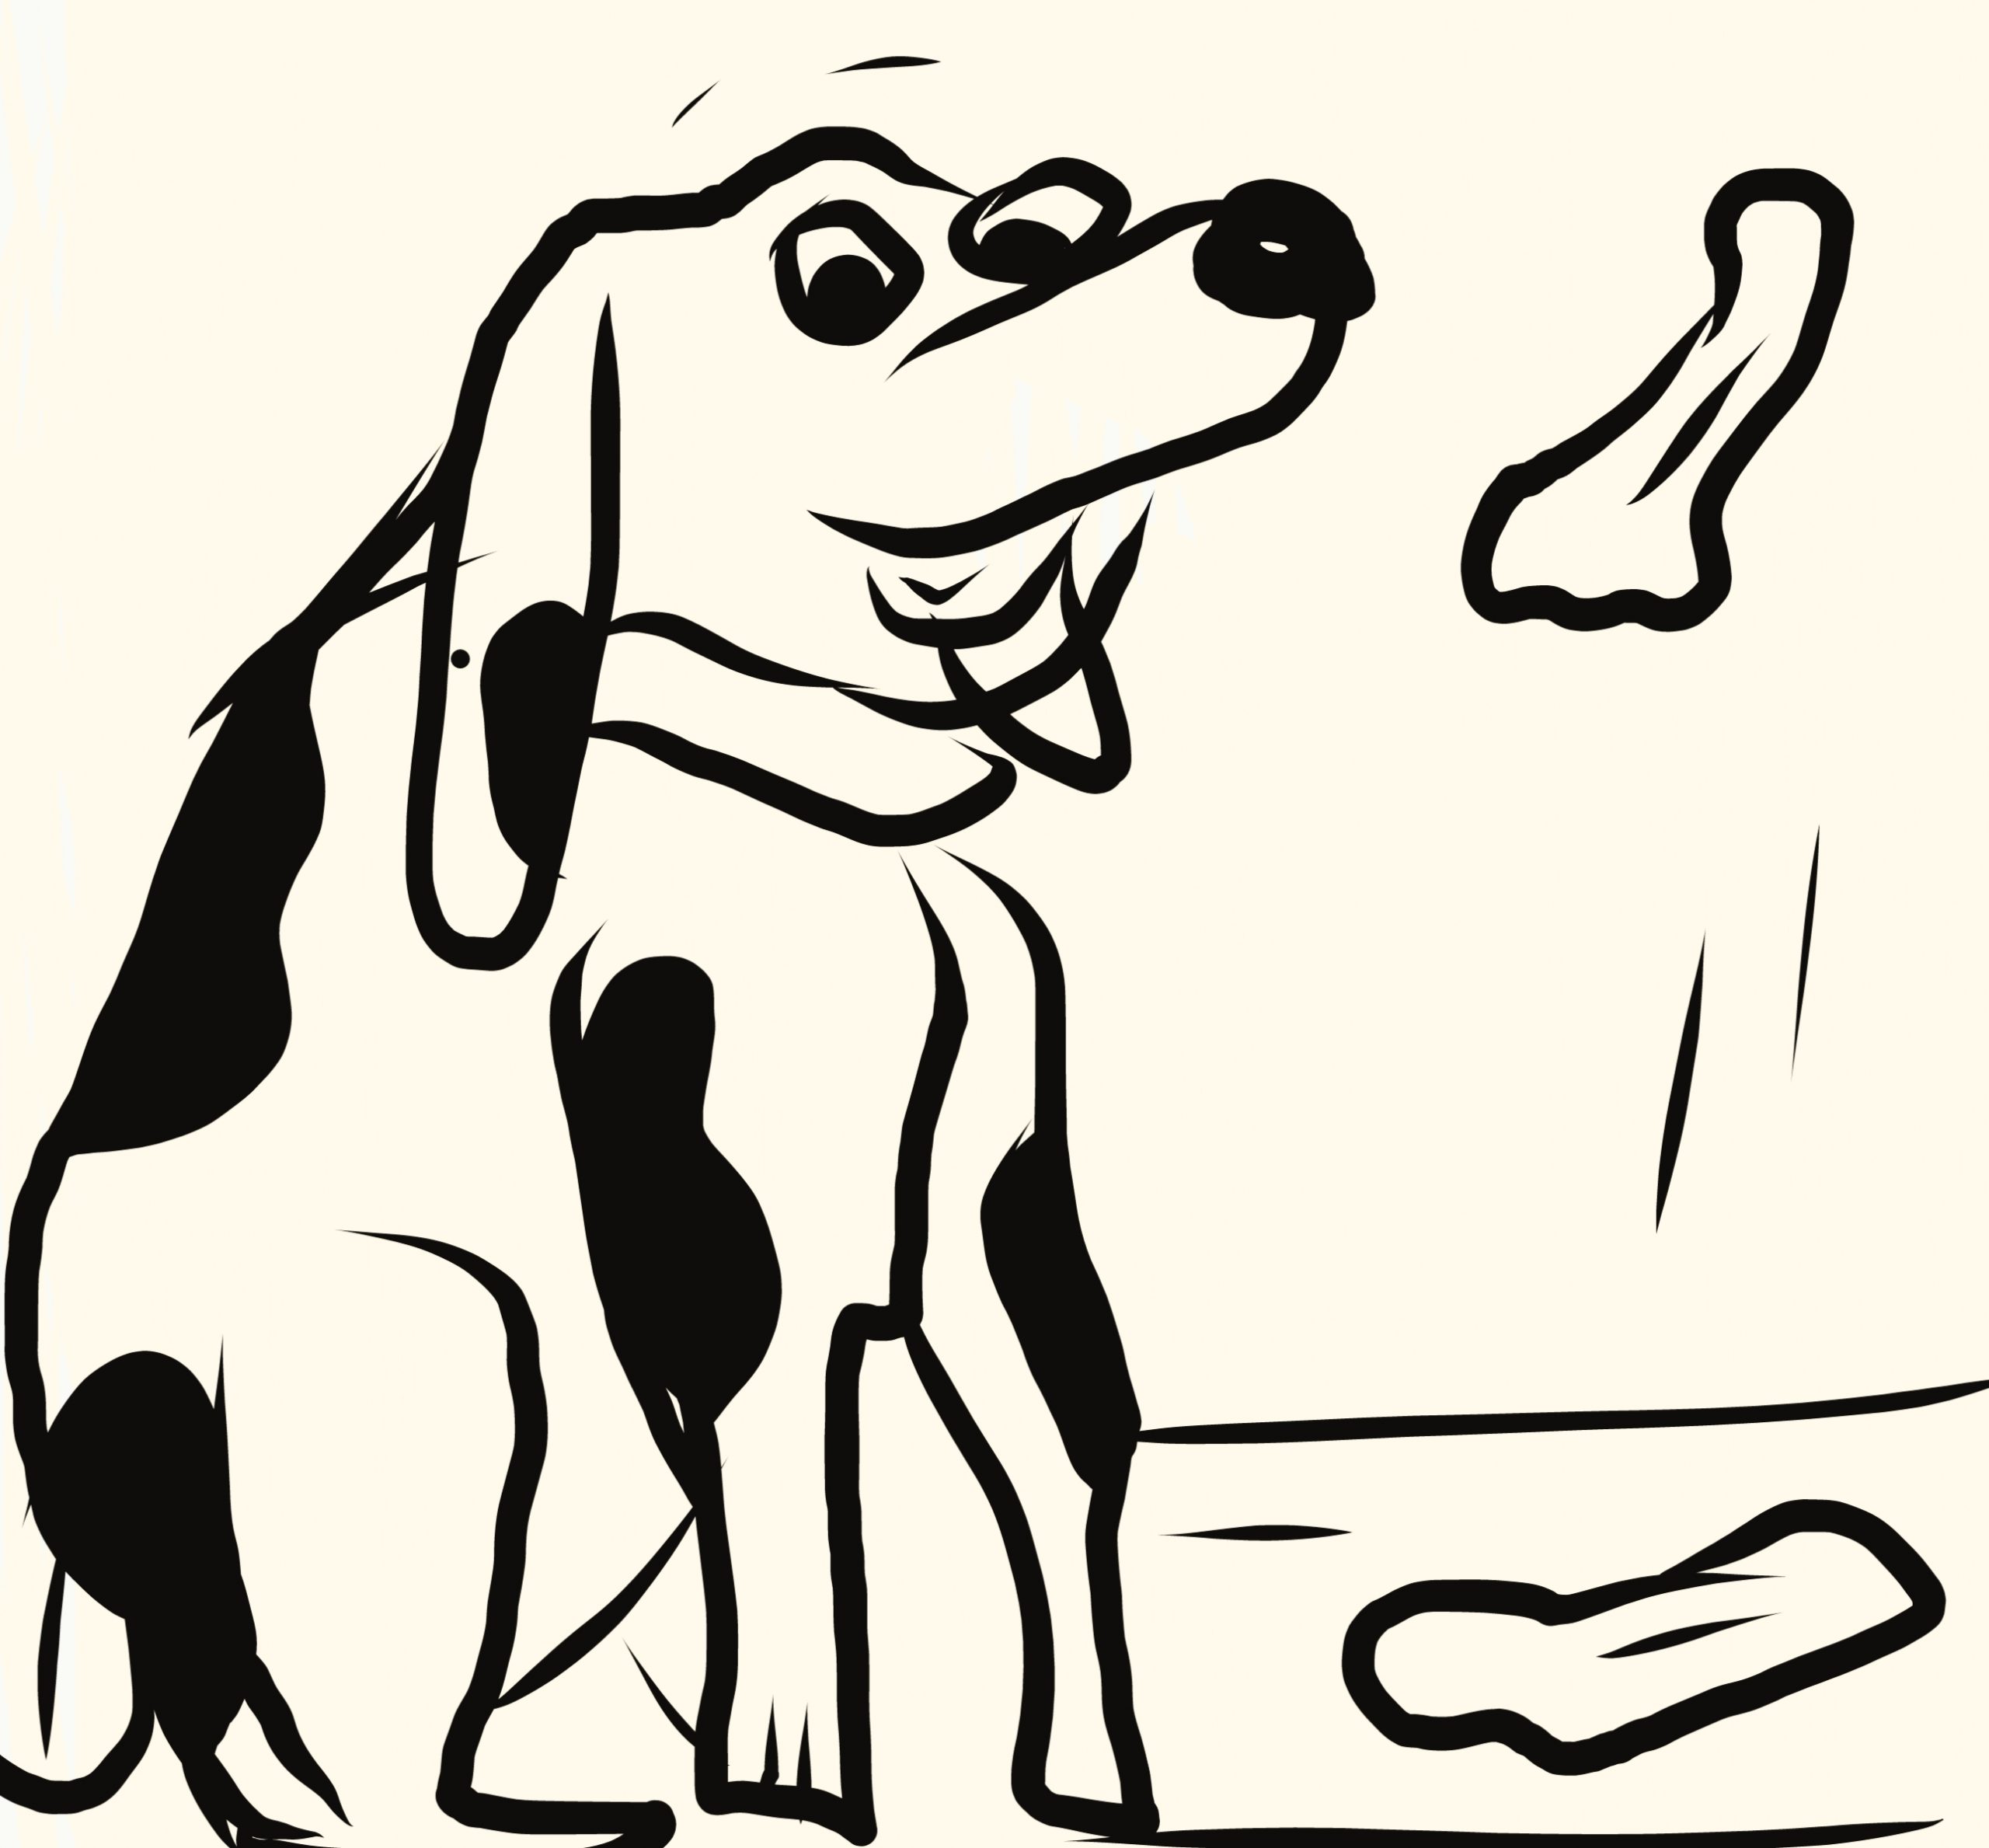 Dog and bone illustration